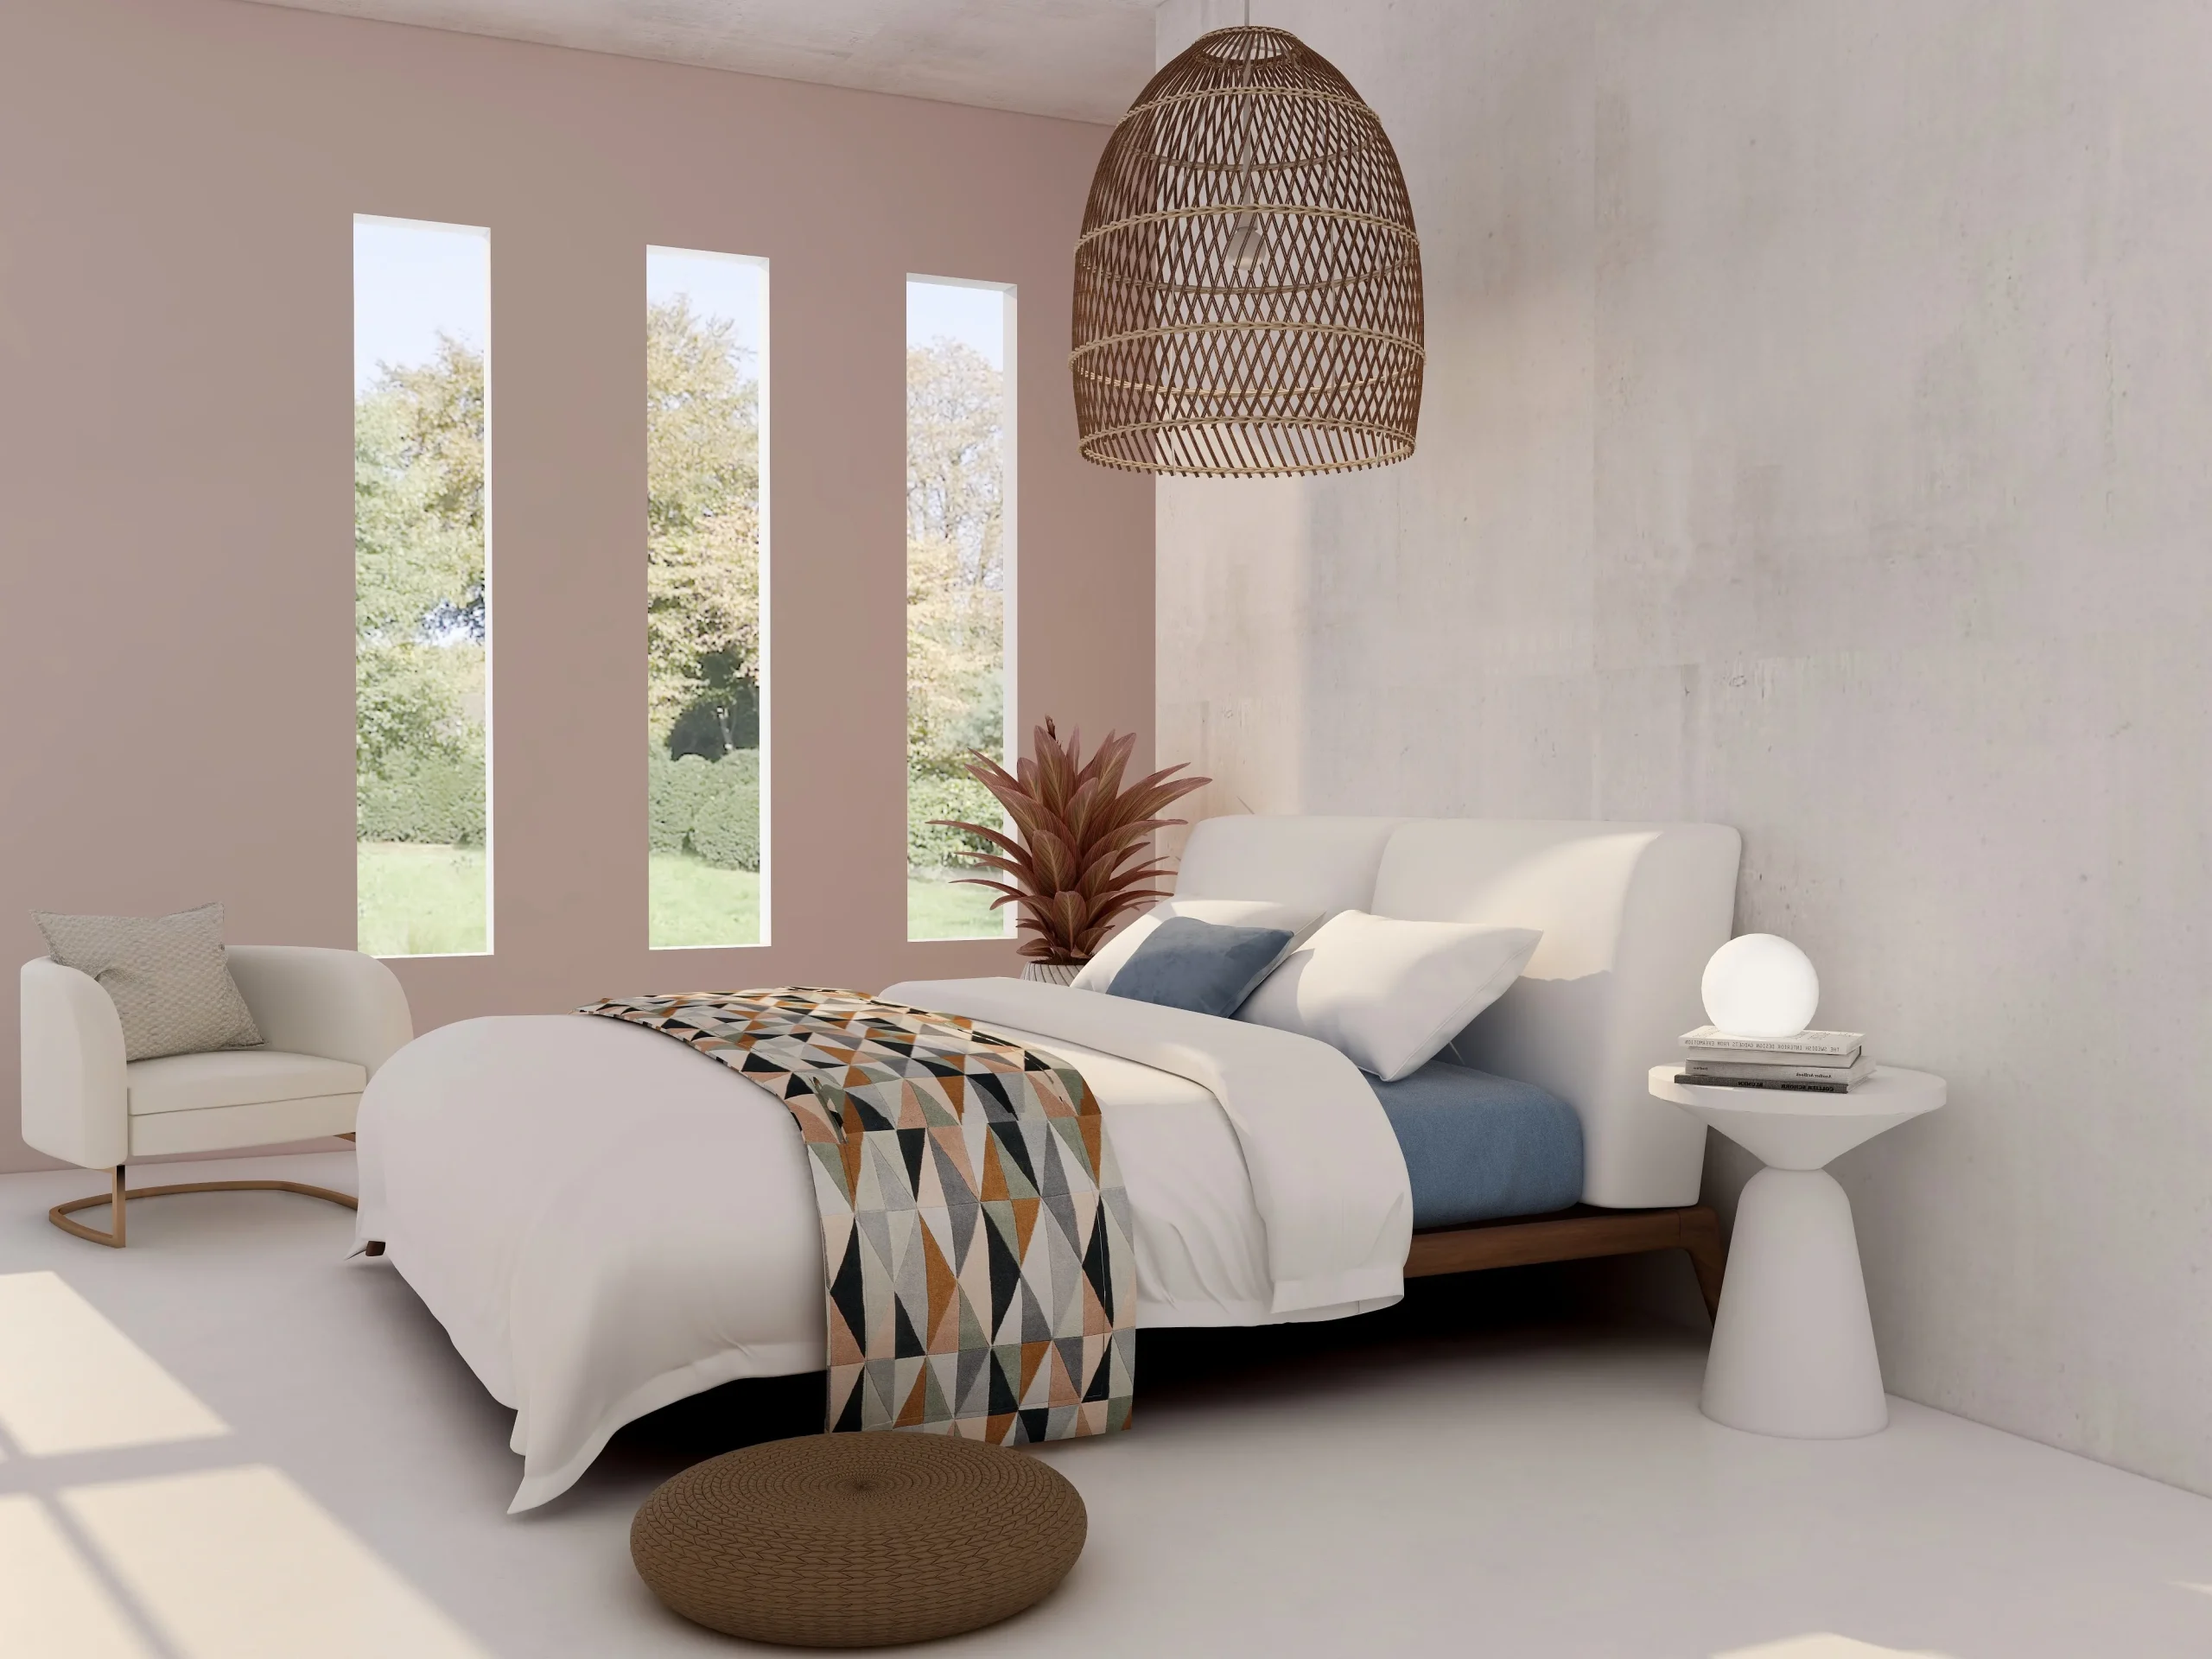 Furniture For Bedroom Design